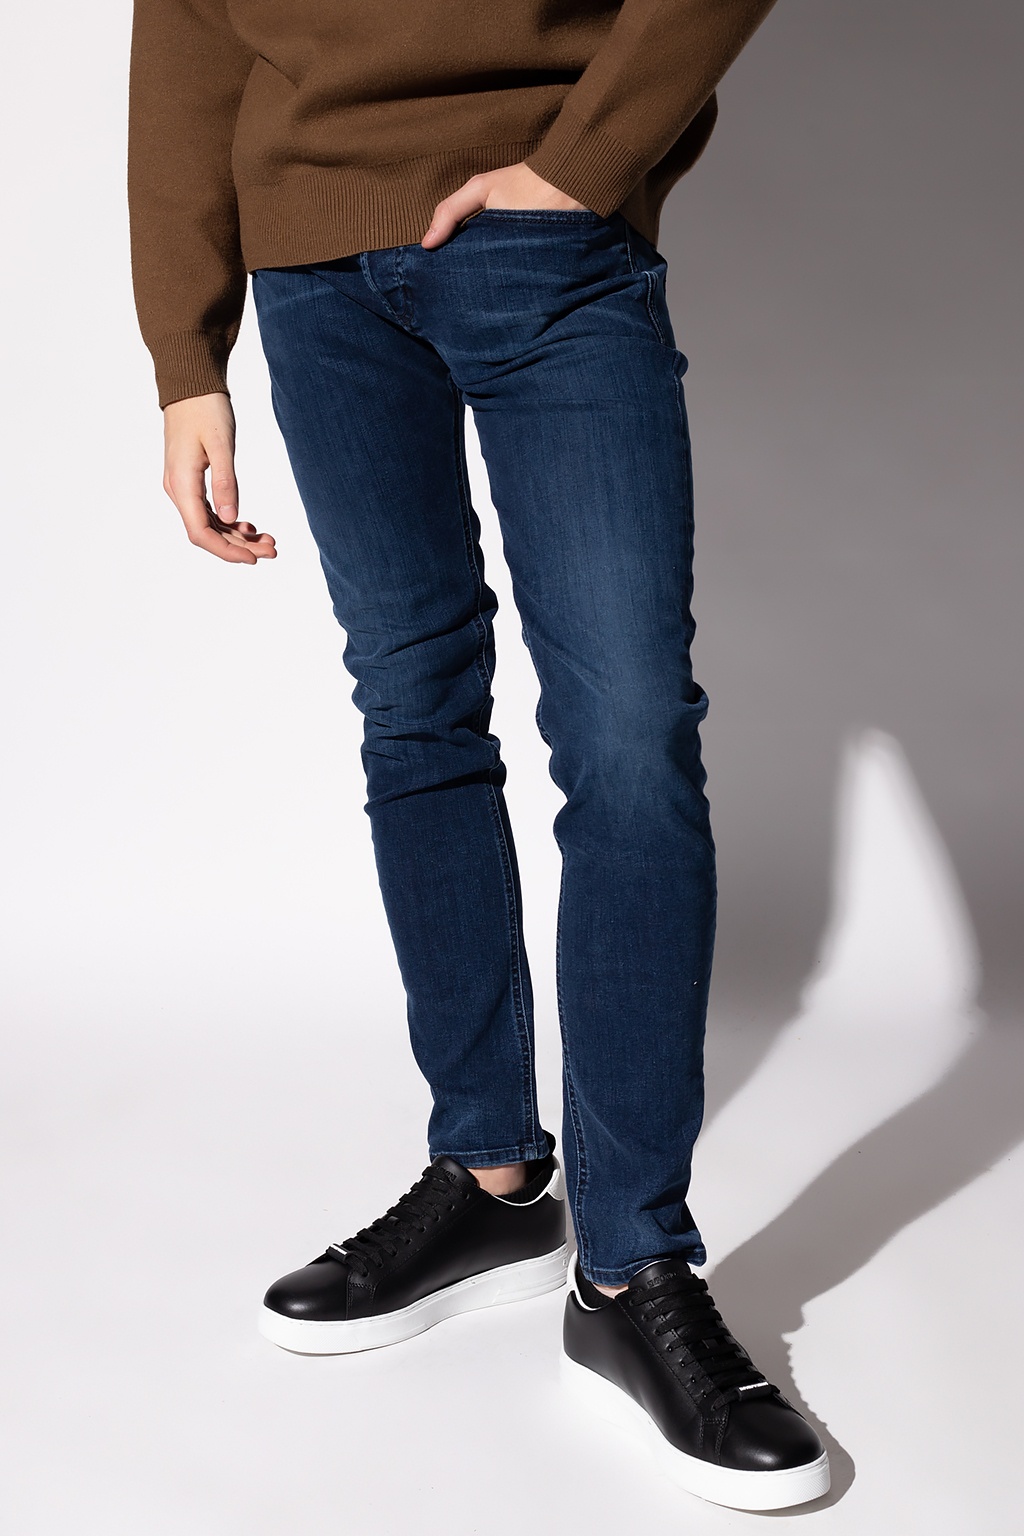 diepgaand vork Score Diesel 'Sleenker' skinny jeans | Yours Bordeaux leggings | Men's Clothing |  IetpShops